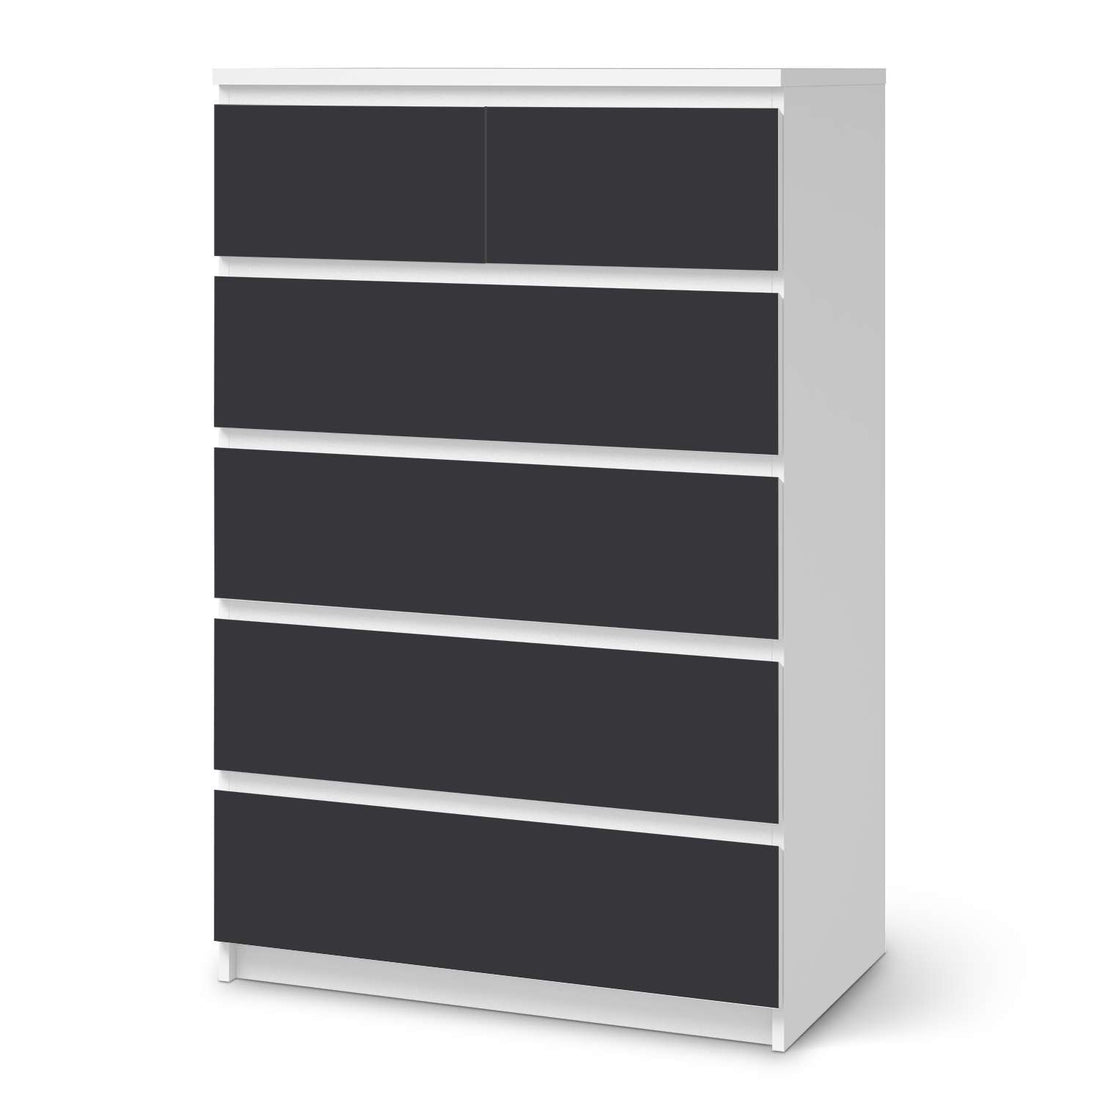 Möbel Klebefolie Grau Dark - IKEA Malm Kommode 6 Schubladen (hoch)  - weiss